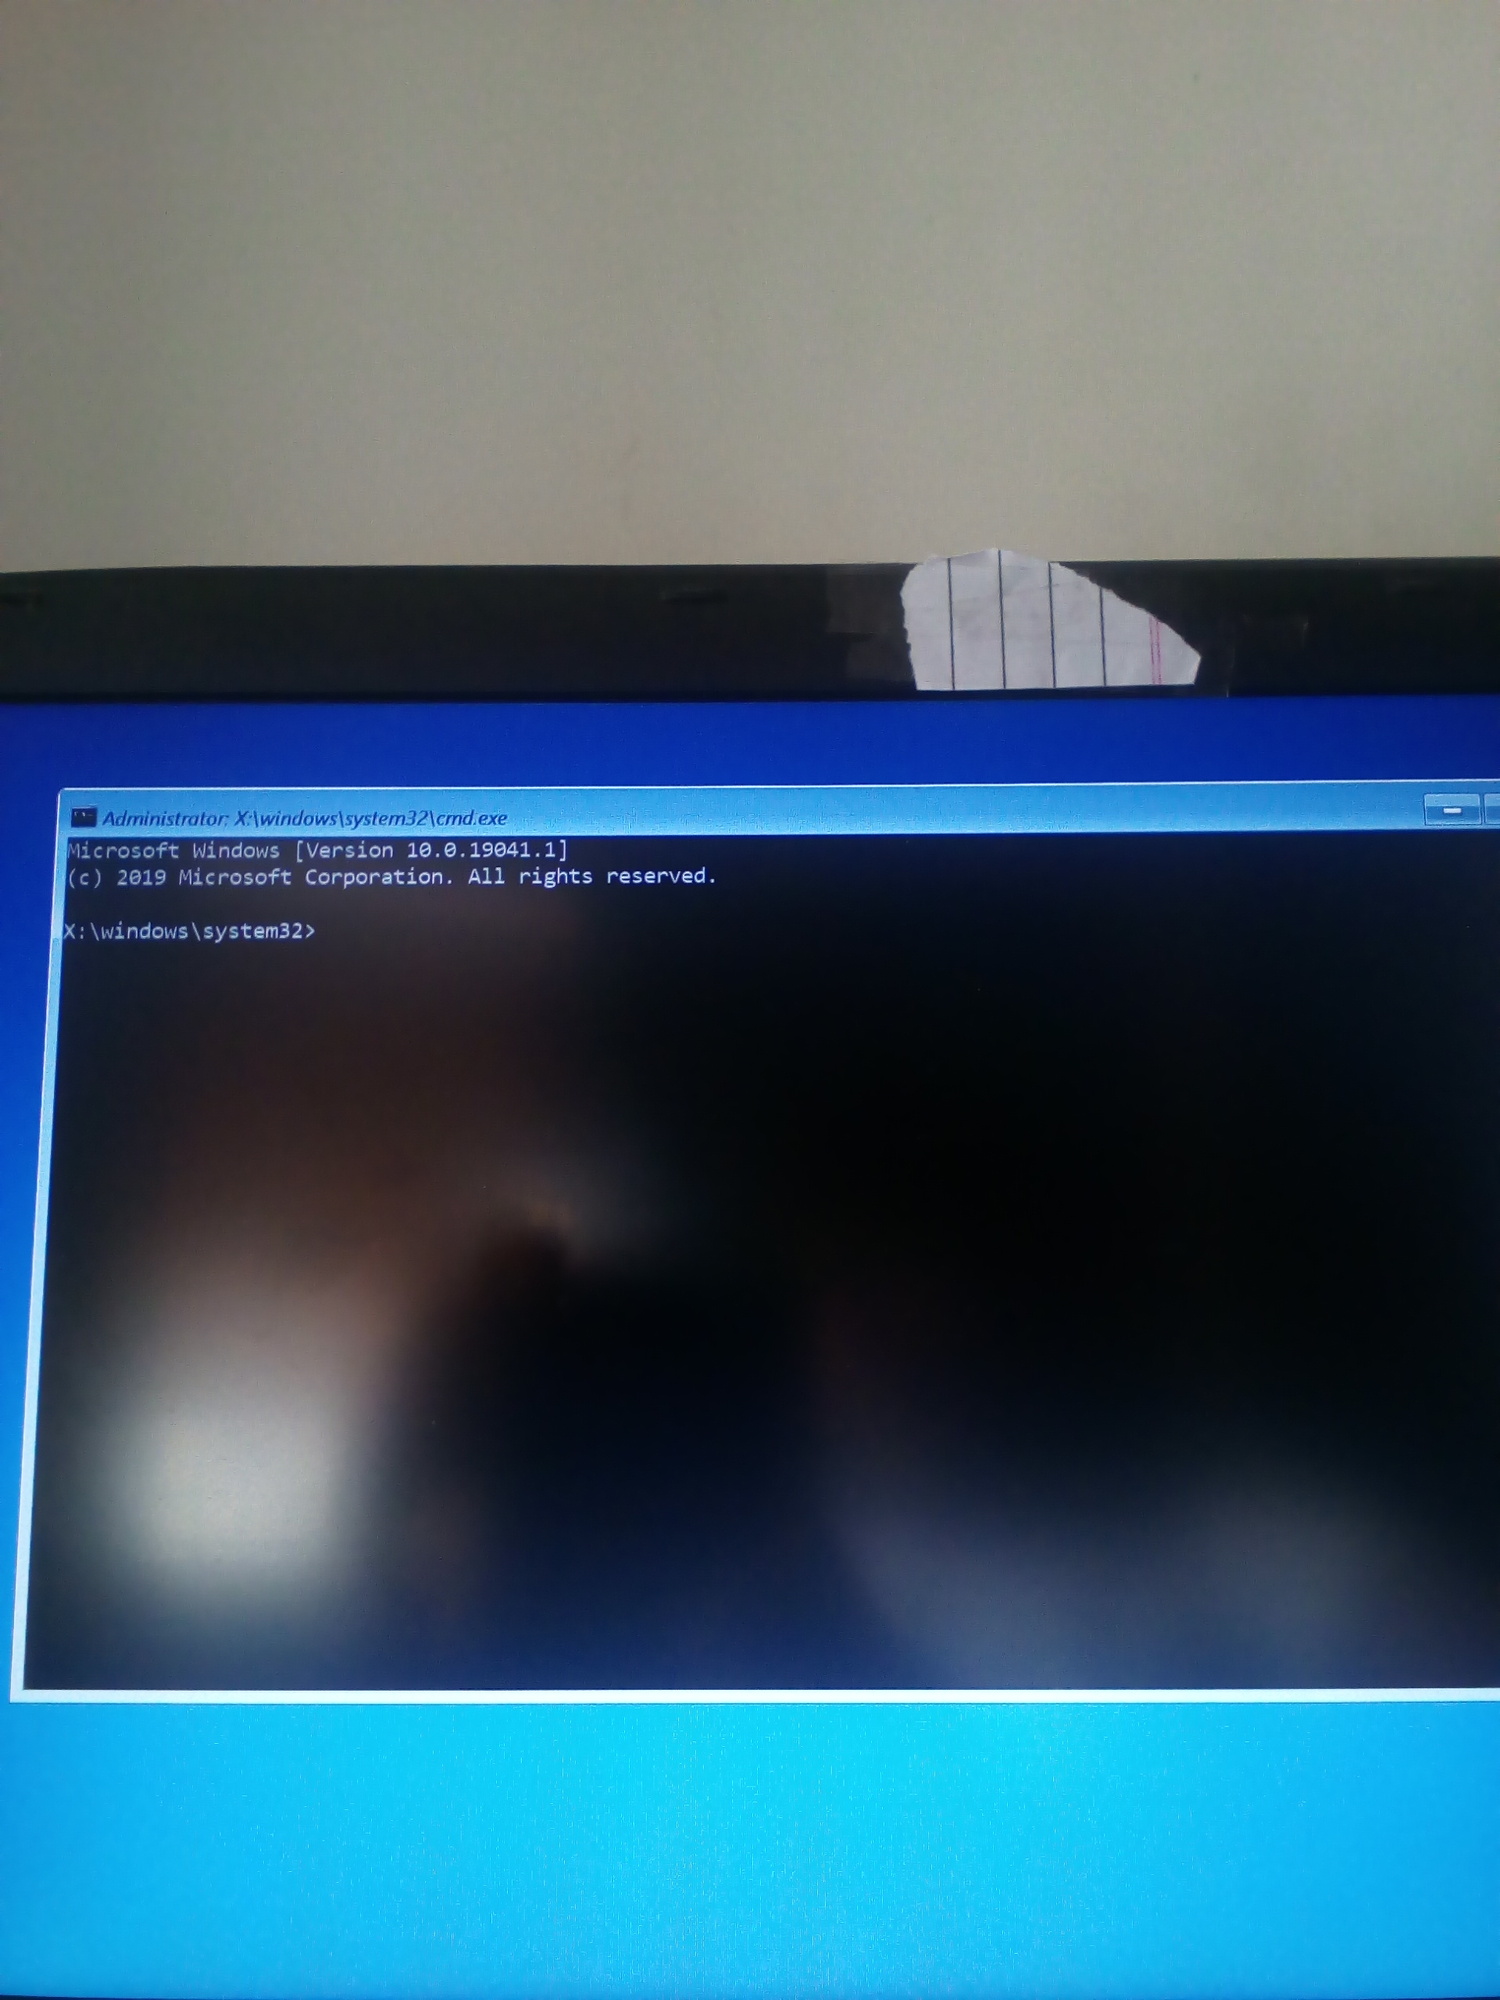 Clean install windows 10 edc5a3c8-babe-46cc-8879-5e3eb3daf074?upload=true.jpg